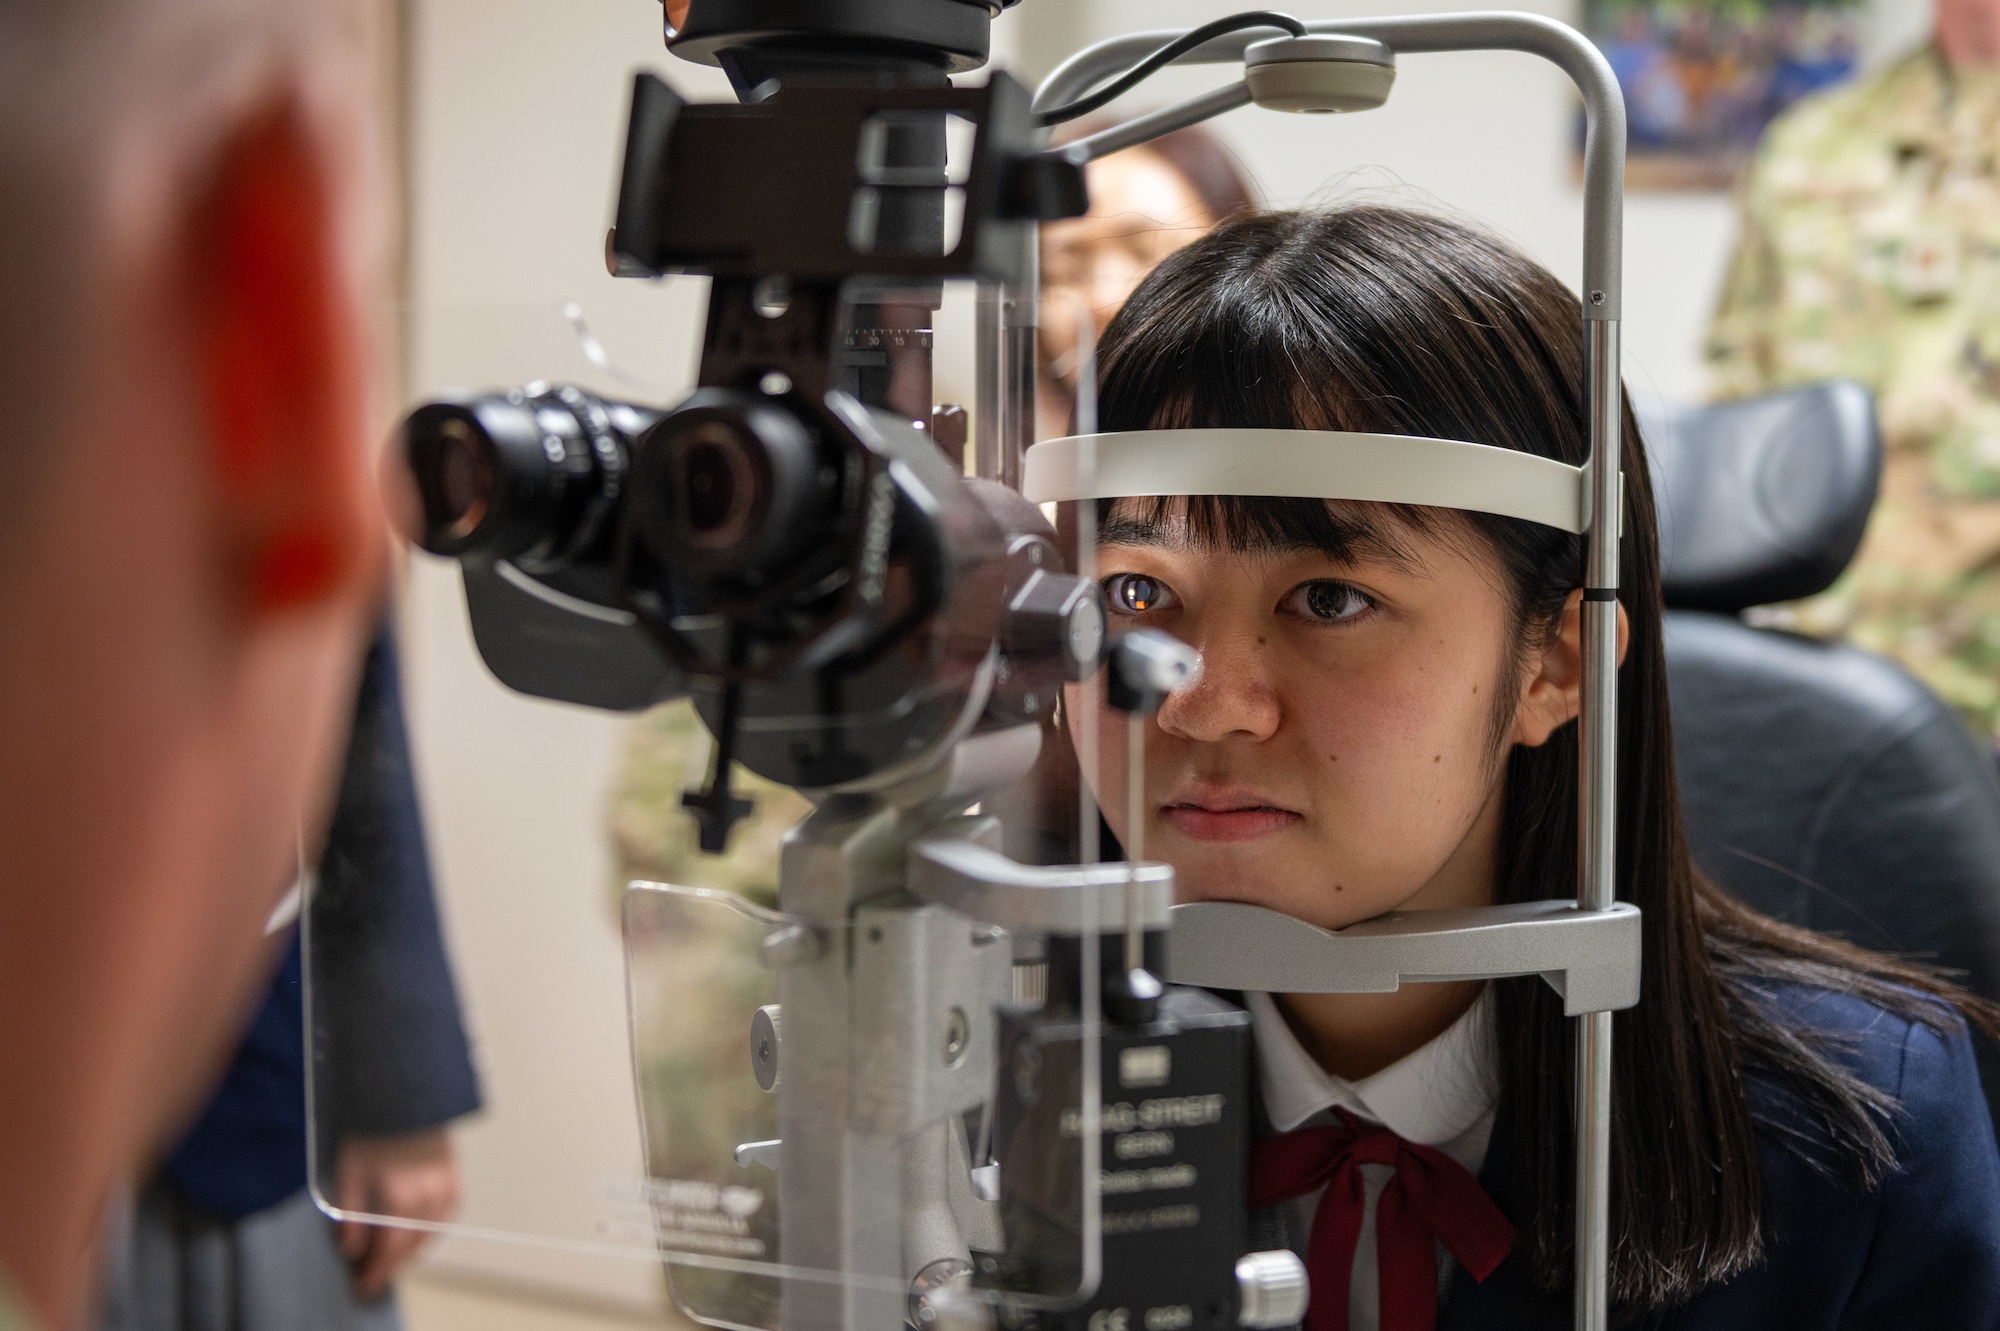 An Okinawan student receives an eye exam